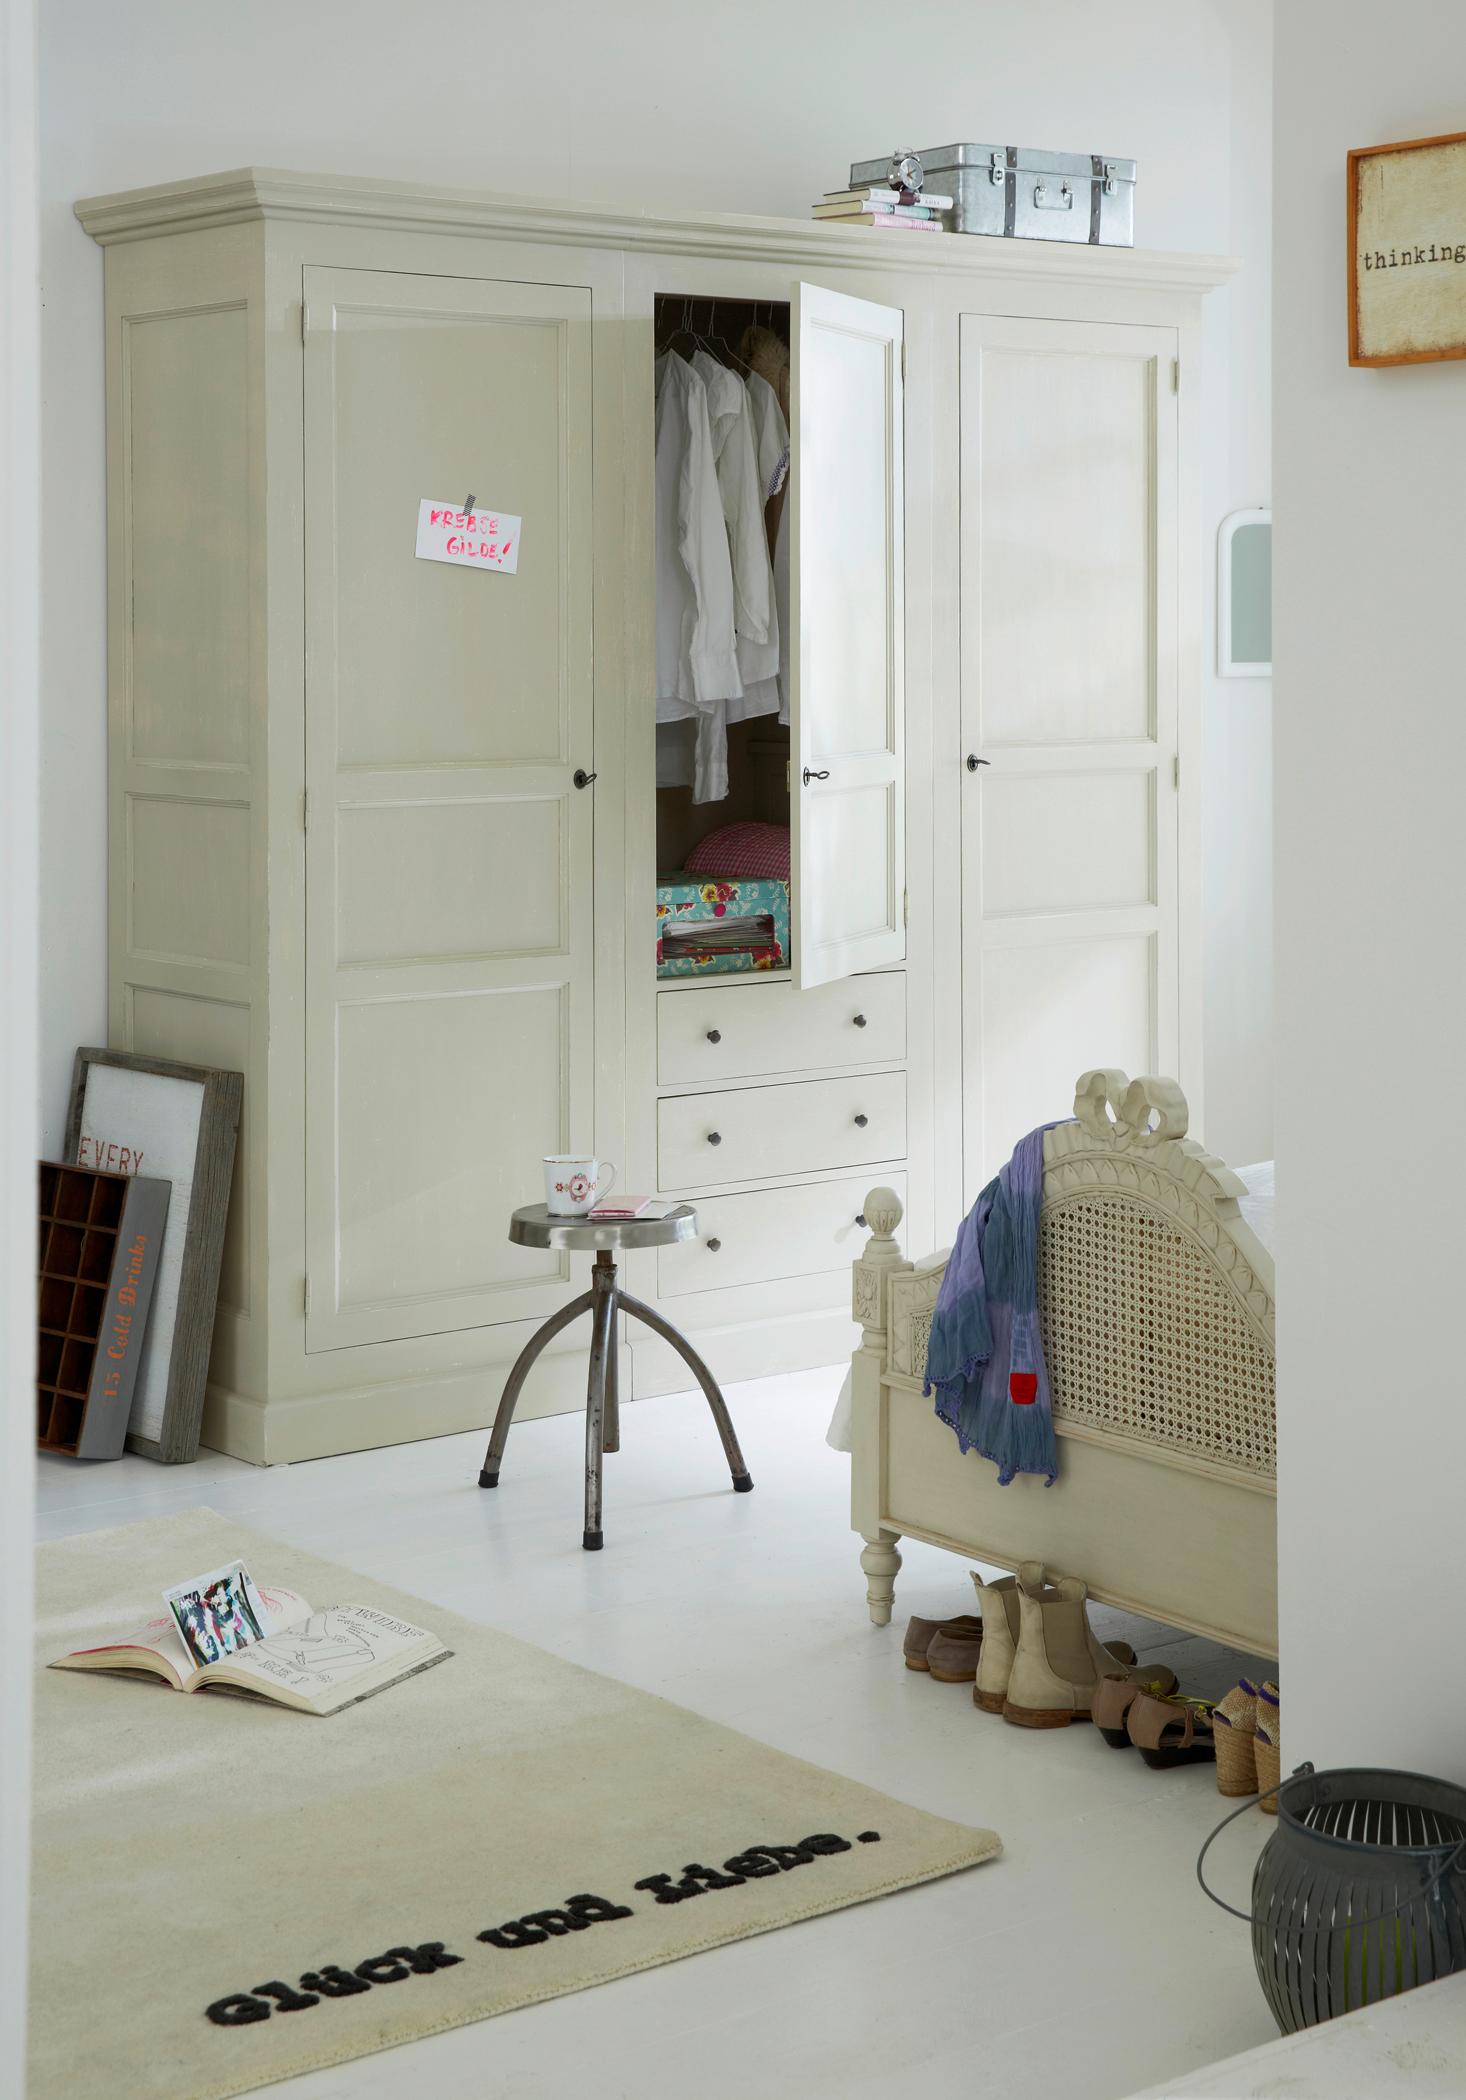 Schlafzimmer im hellen Beige und Weiß #teppich #kleiderschrank #schlafzimmereinrichtung ©car Selbstbaumöbel